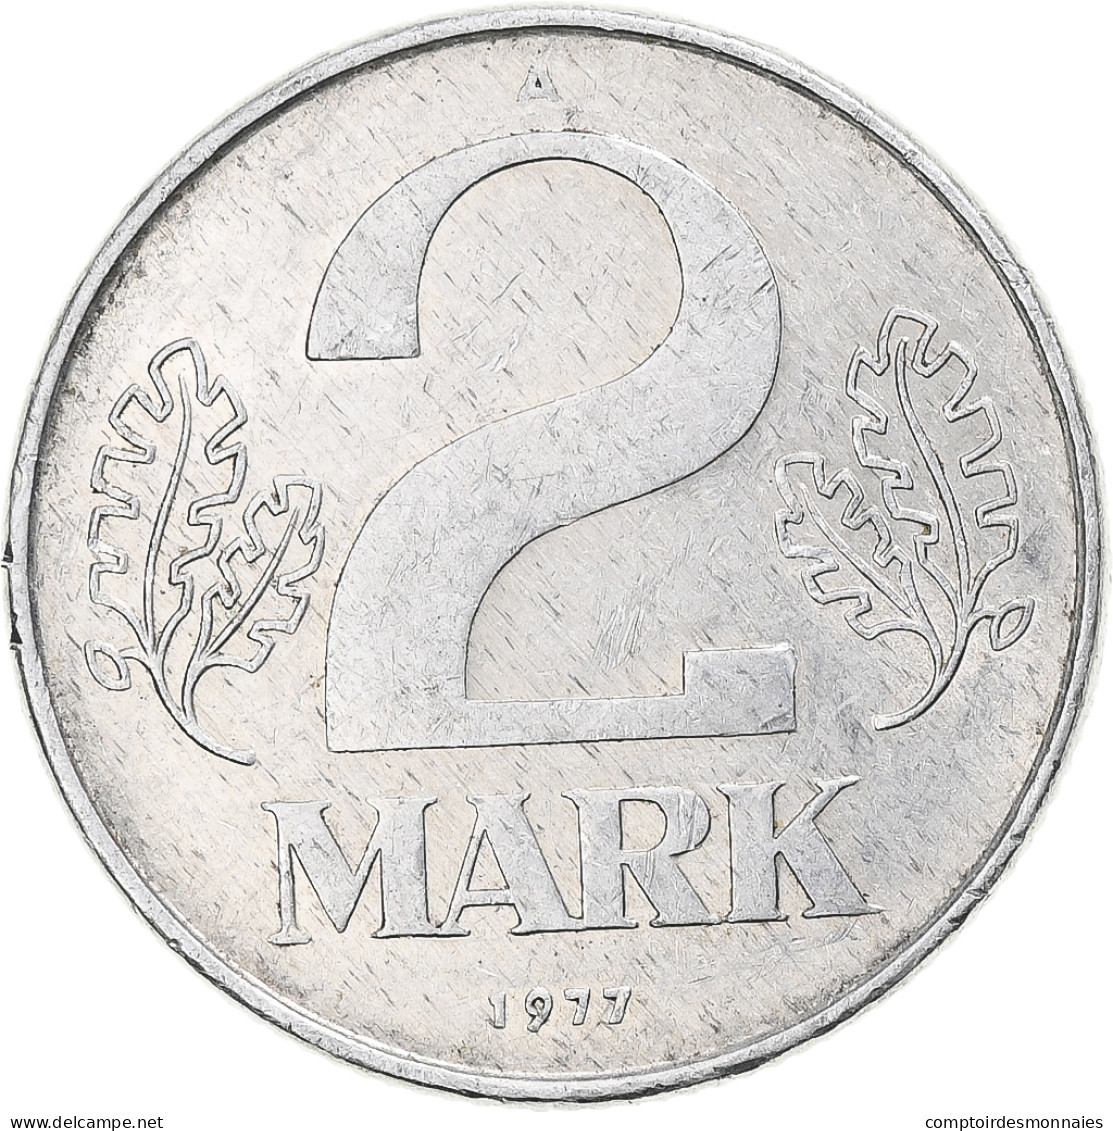 République Démocratique Allemande, 2 Mark, 1977 - 2 Mark